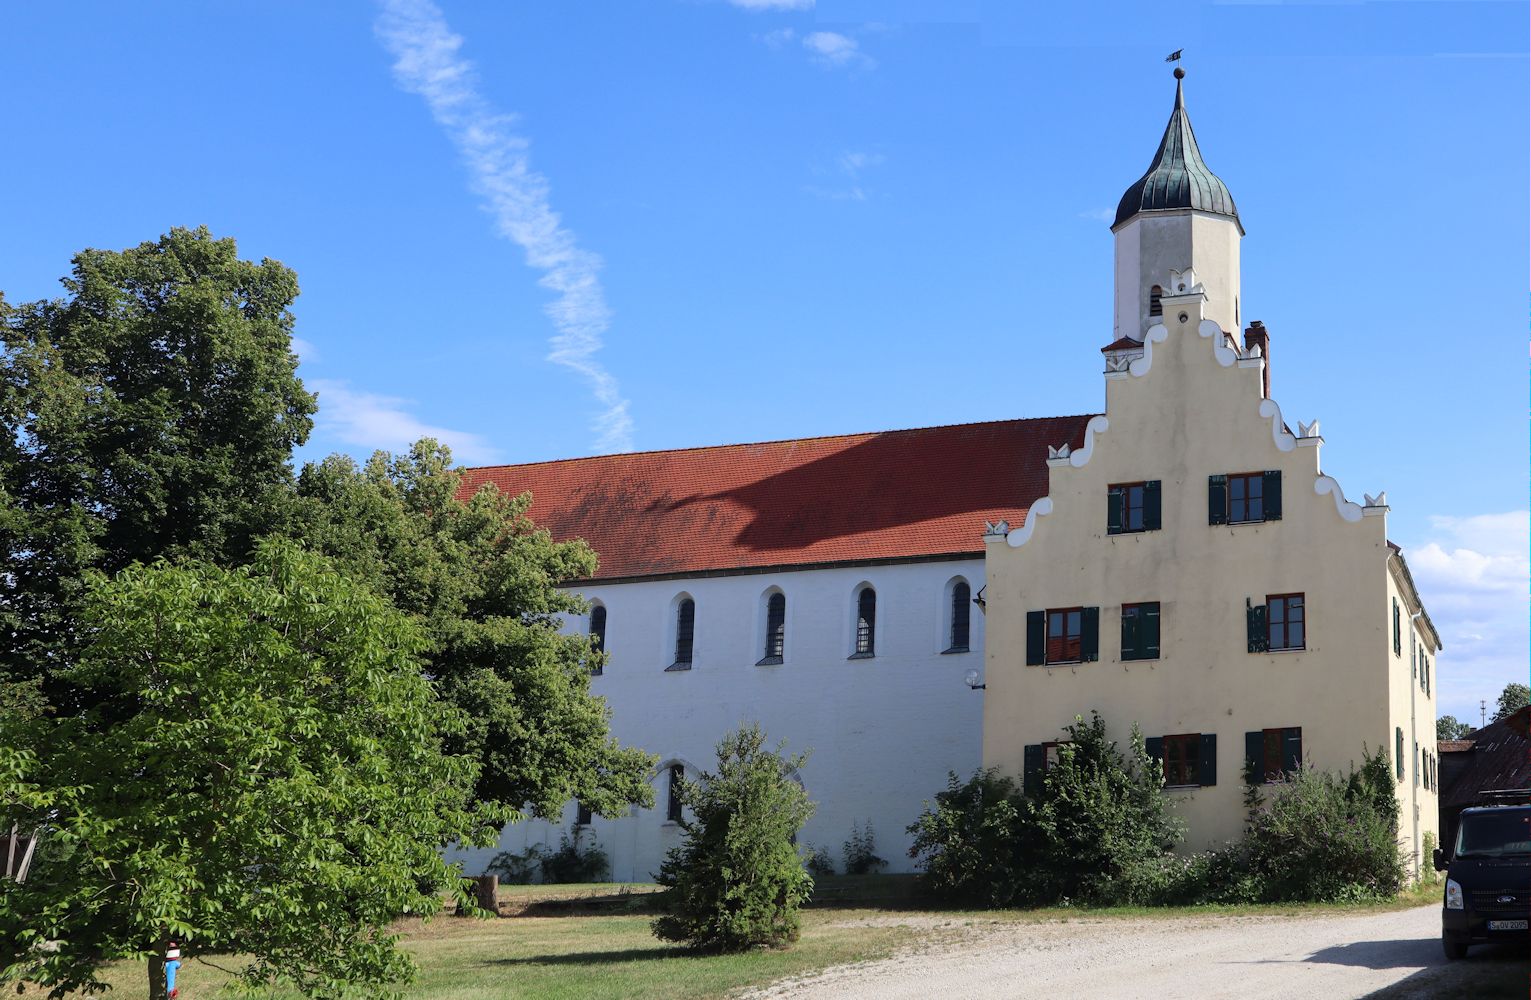 ehemaliges Kloster Zimmern in Deiningen